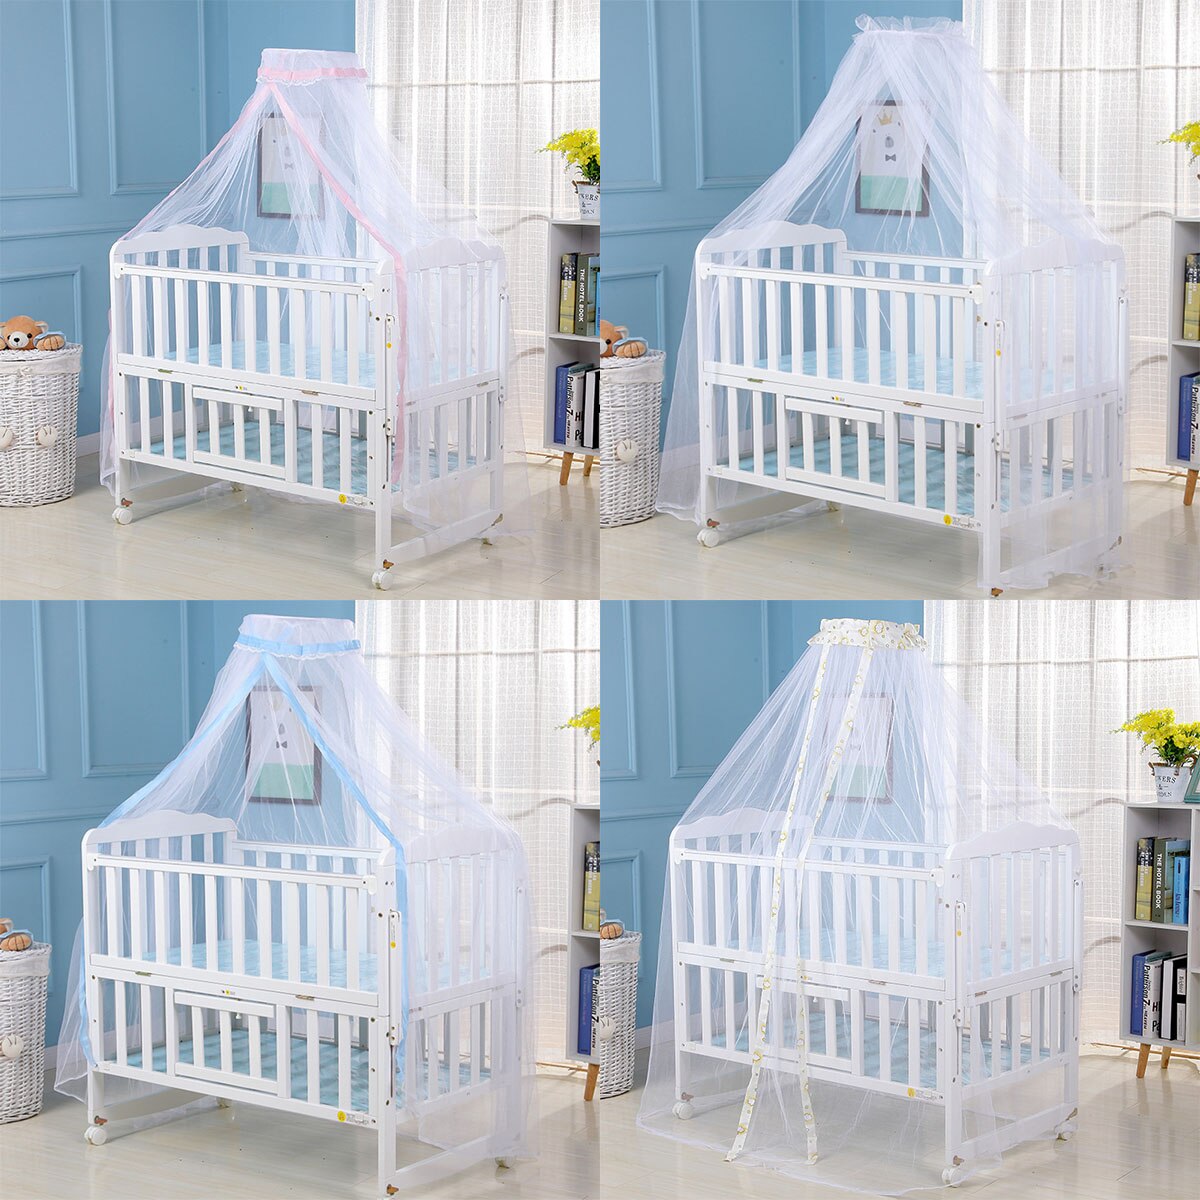 Myggenet baby seng myggenet mesh kuppel gardinet til småbørneseng barneseng baldakin blå hvid farve dropshipp